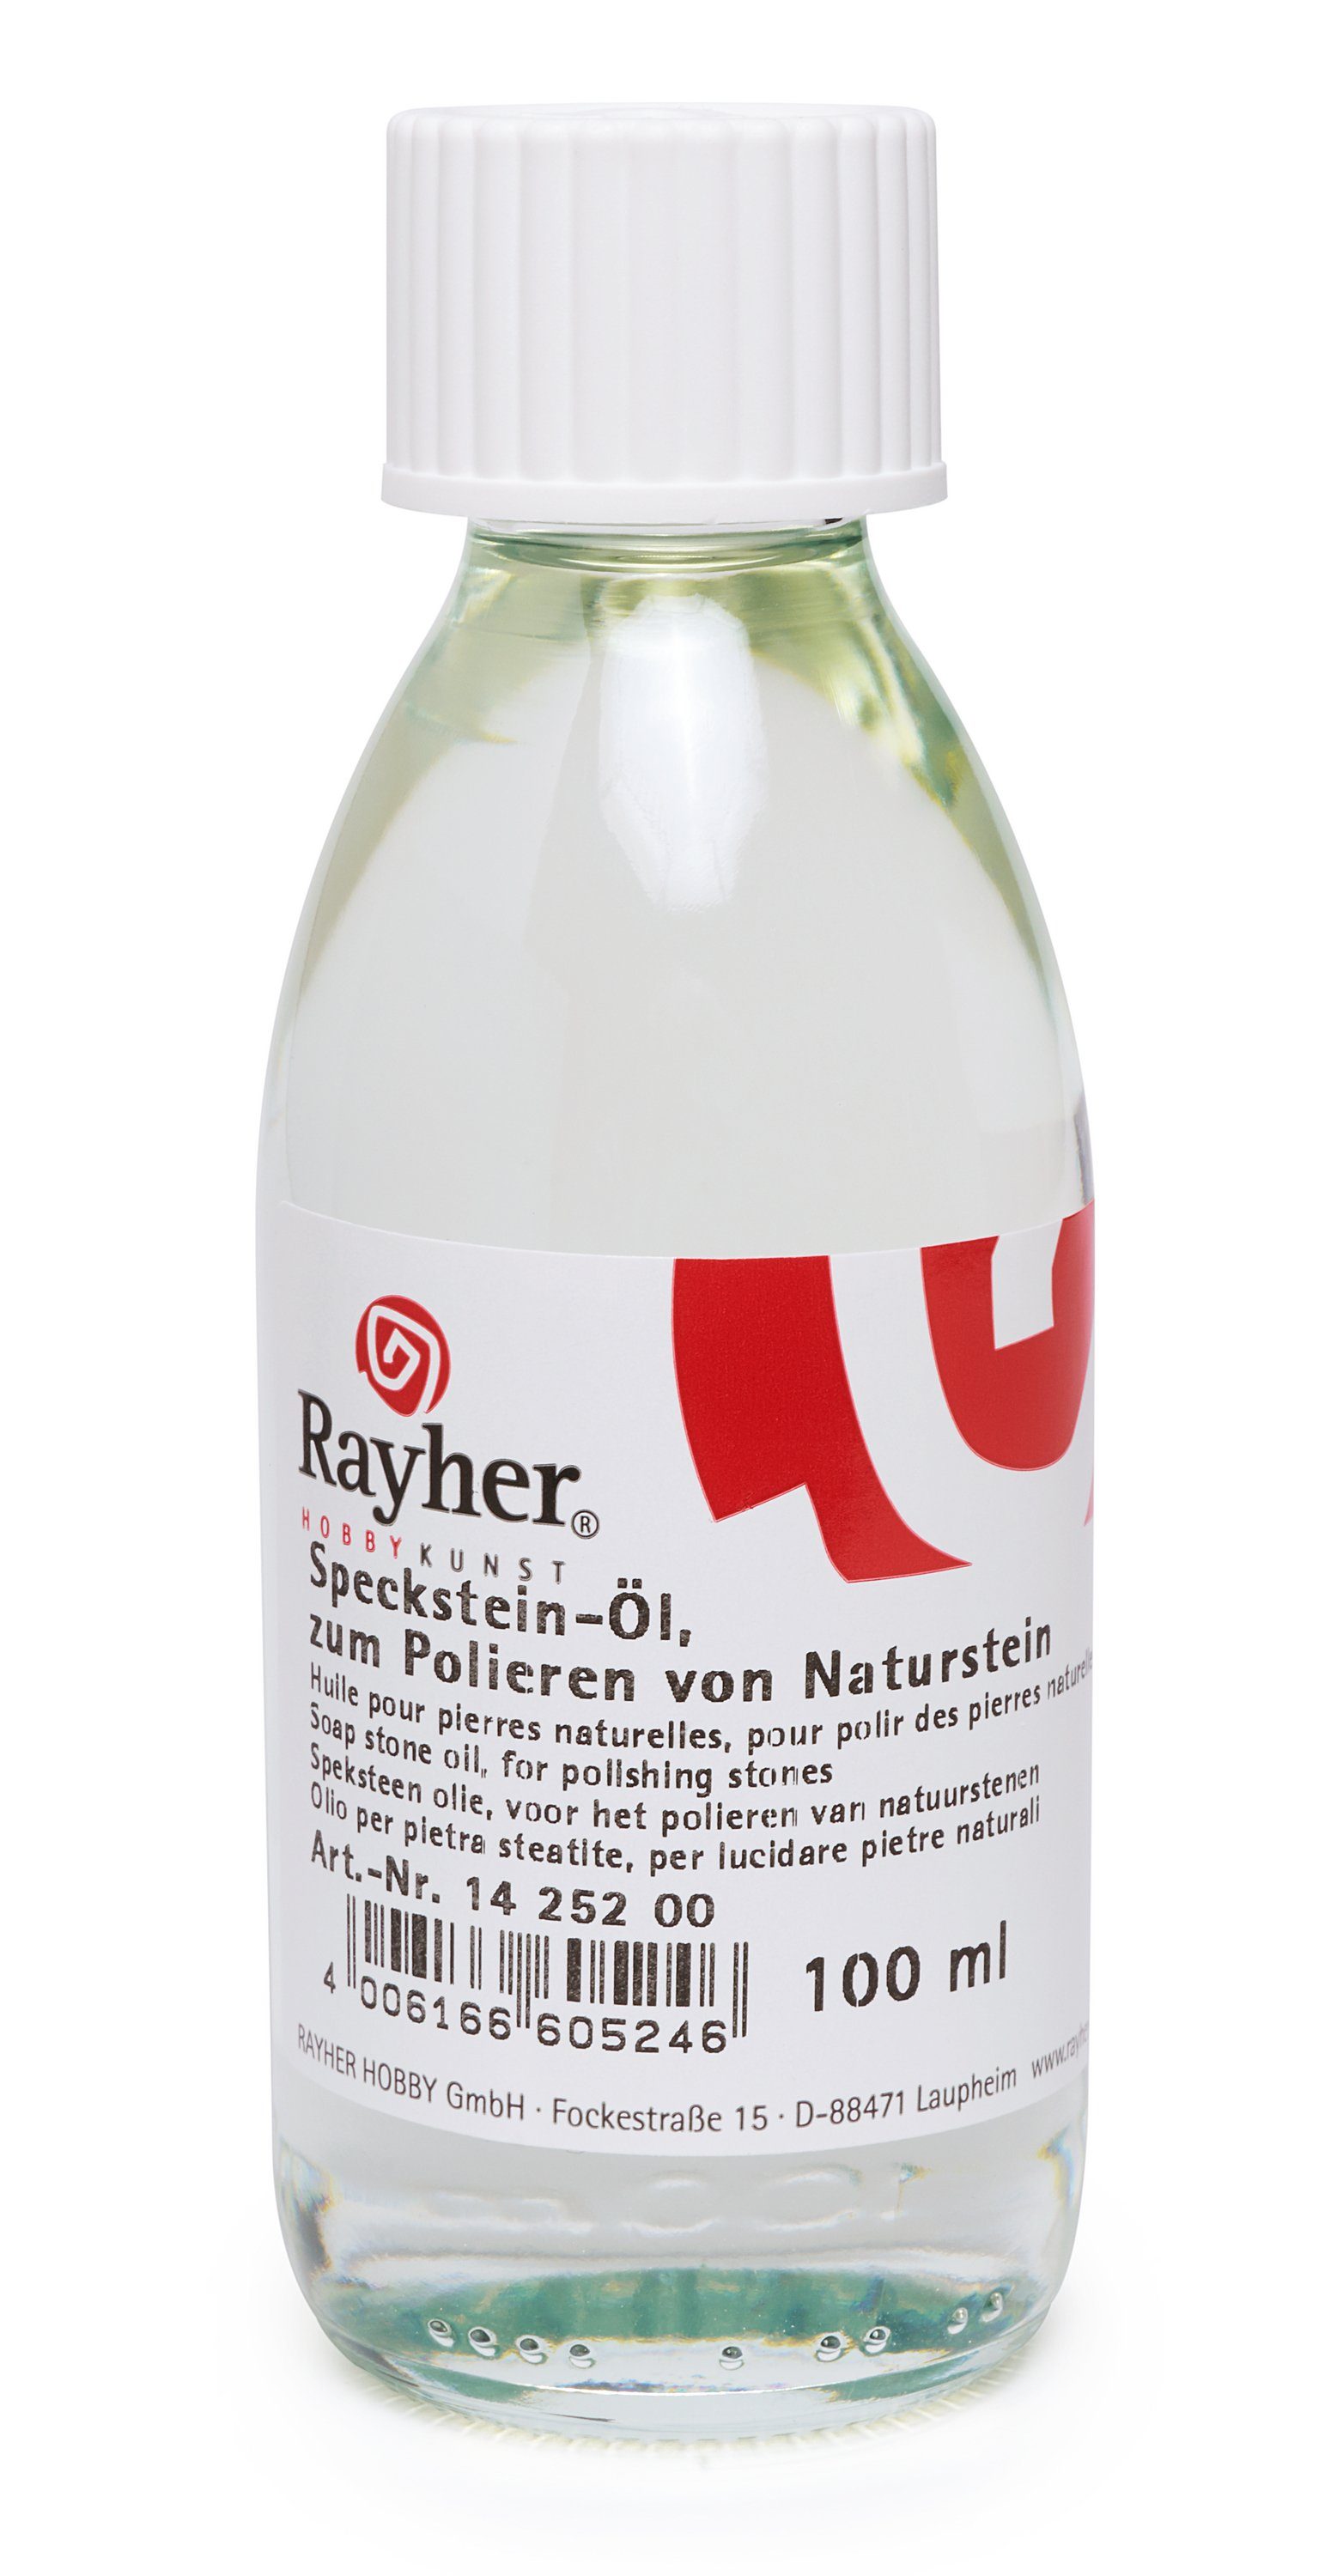 Rayher Reinigungs-Set RAYHER Speckstein-Öl, 100 ml